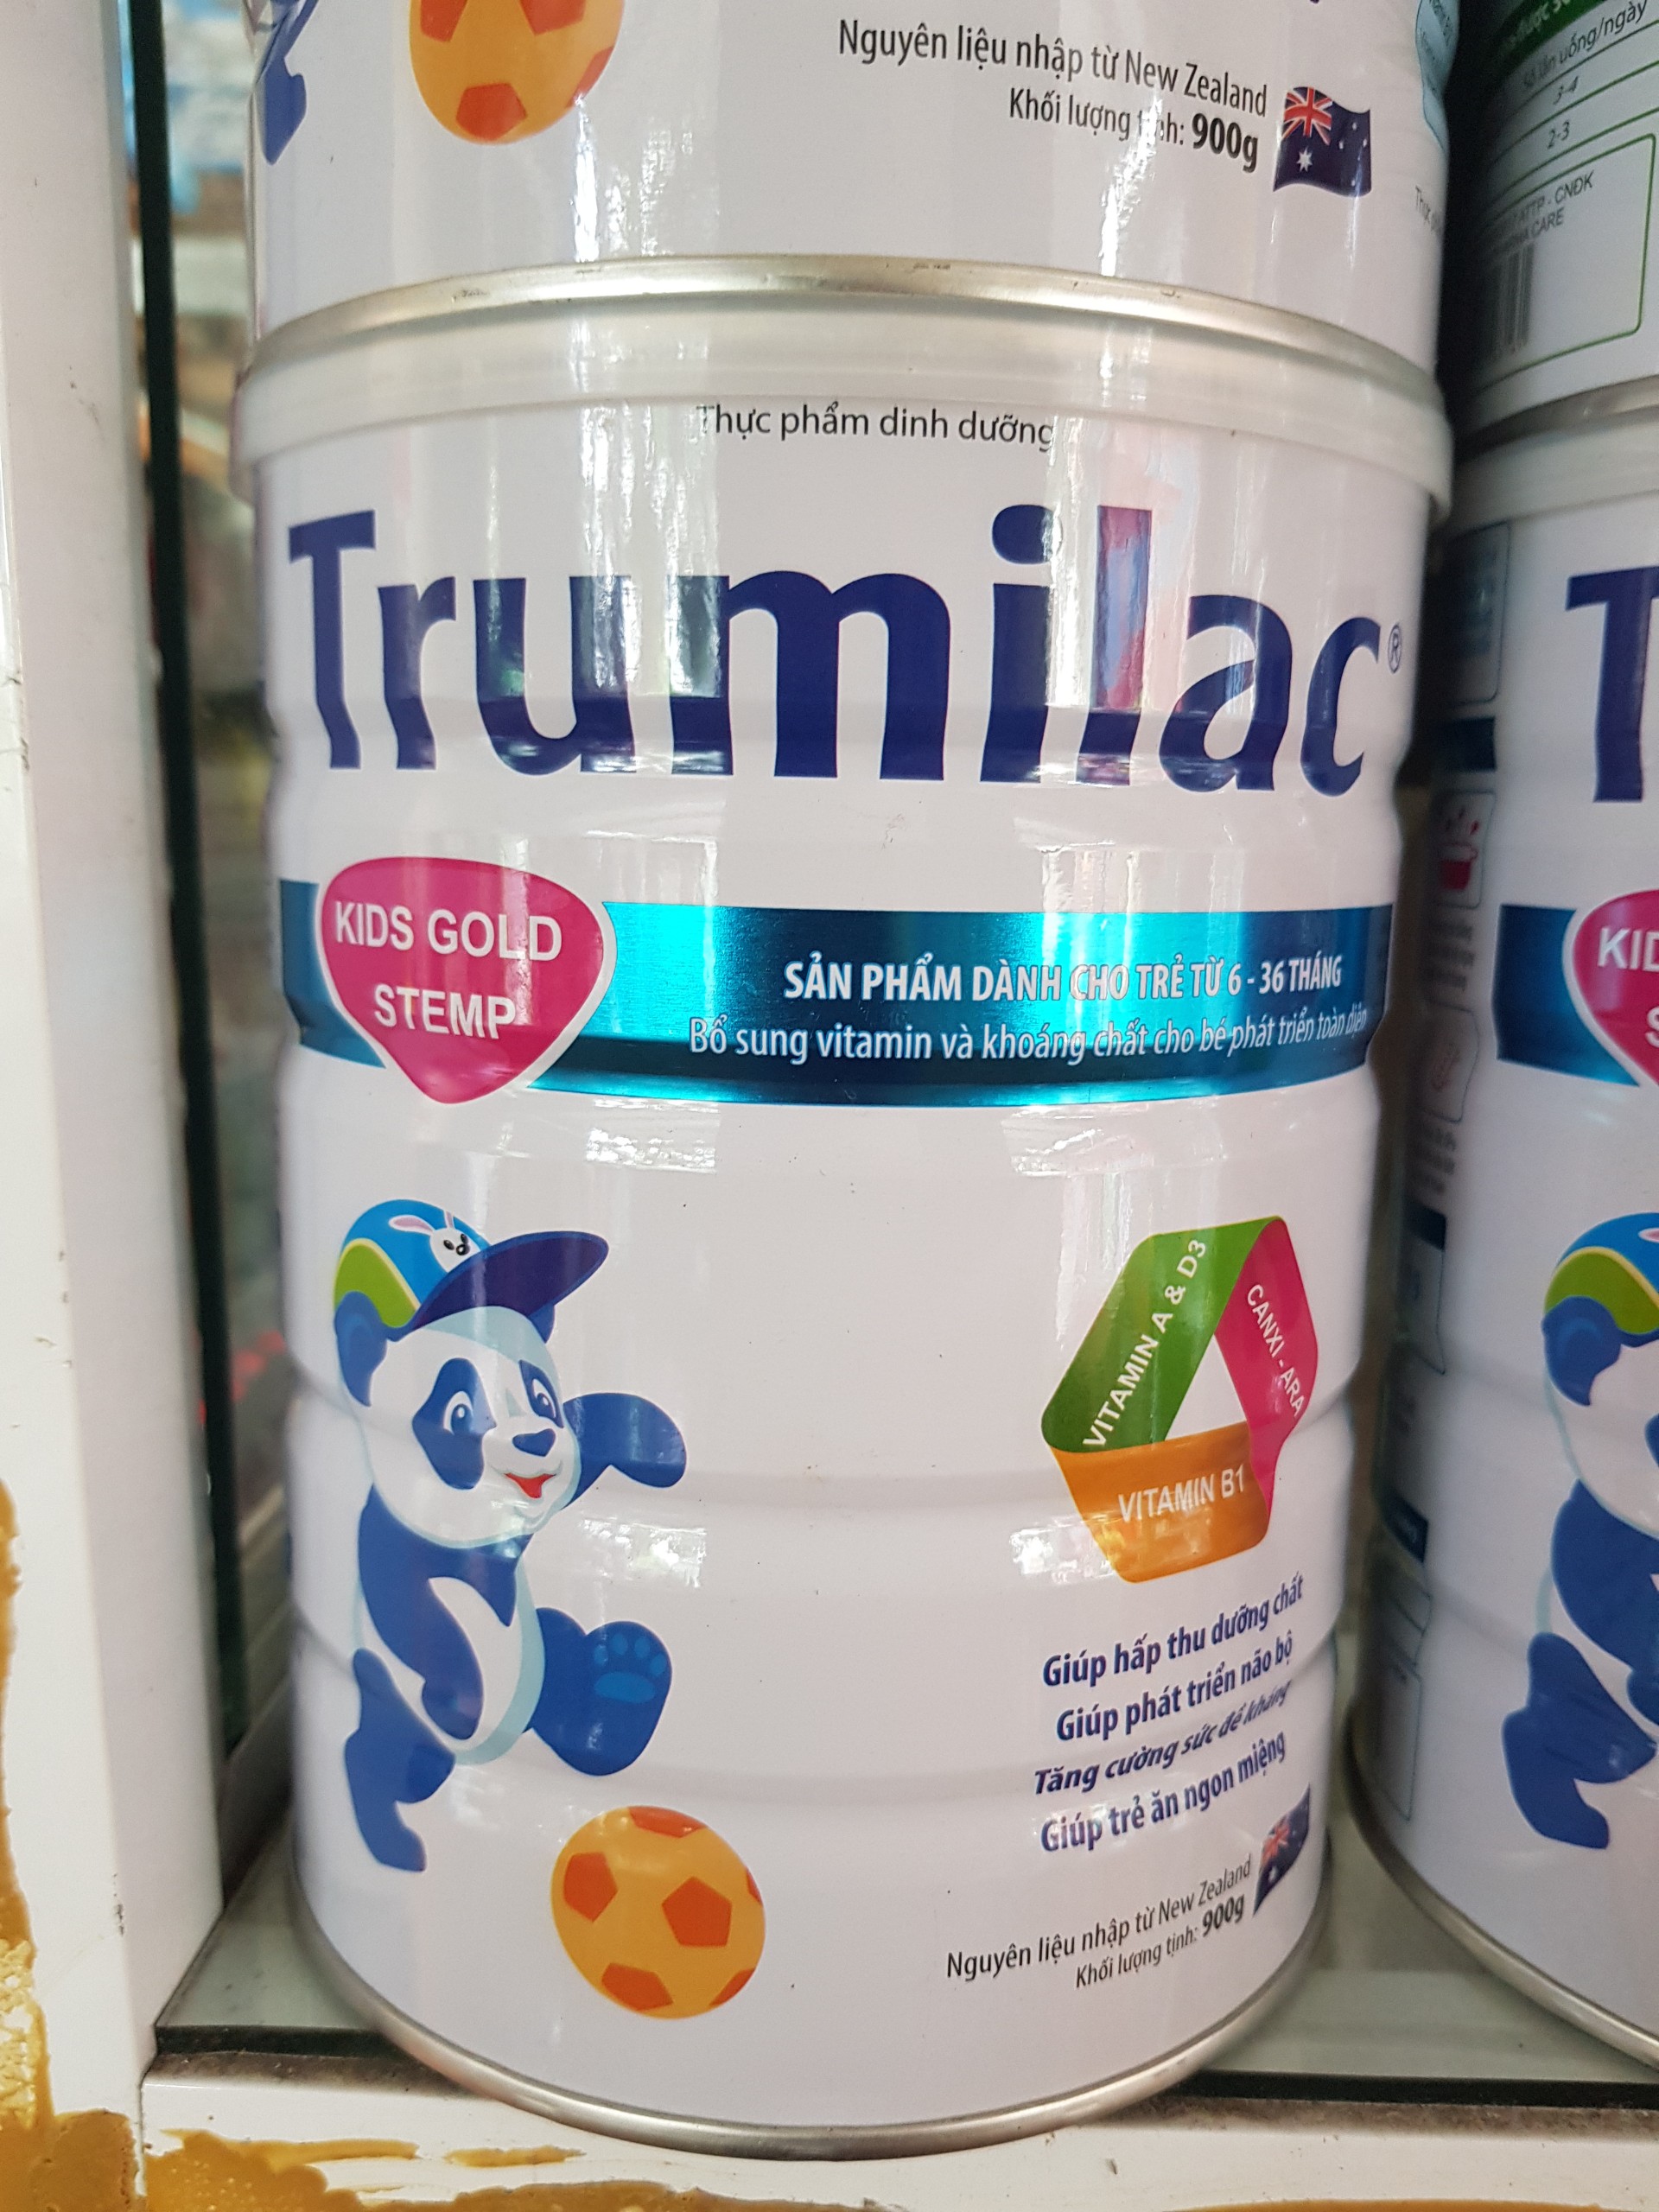 Sữa bột Trumilac Kids Gold Step cho trẻ 6